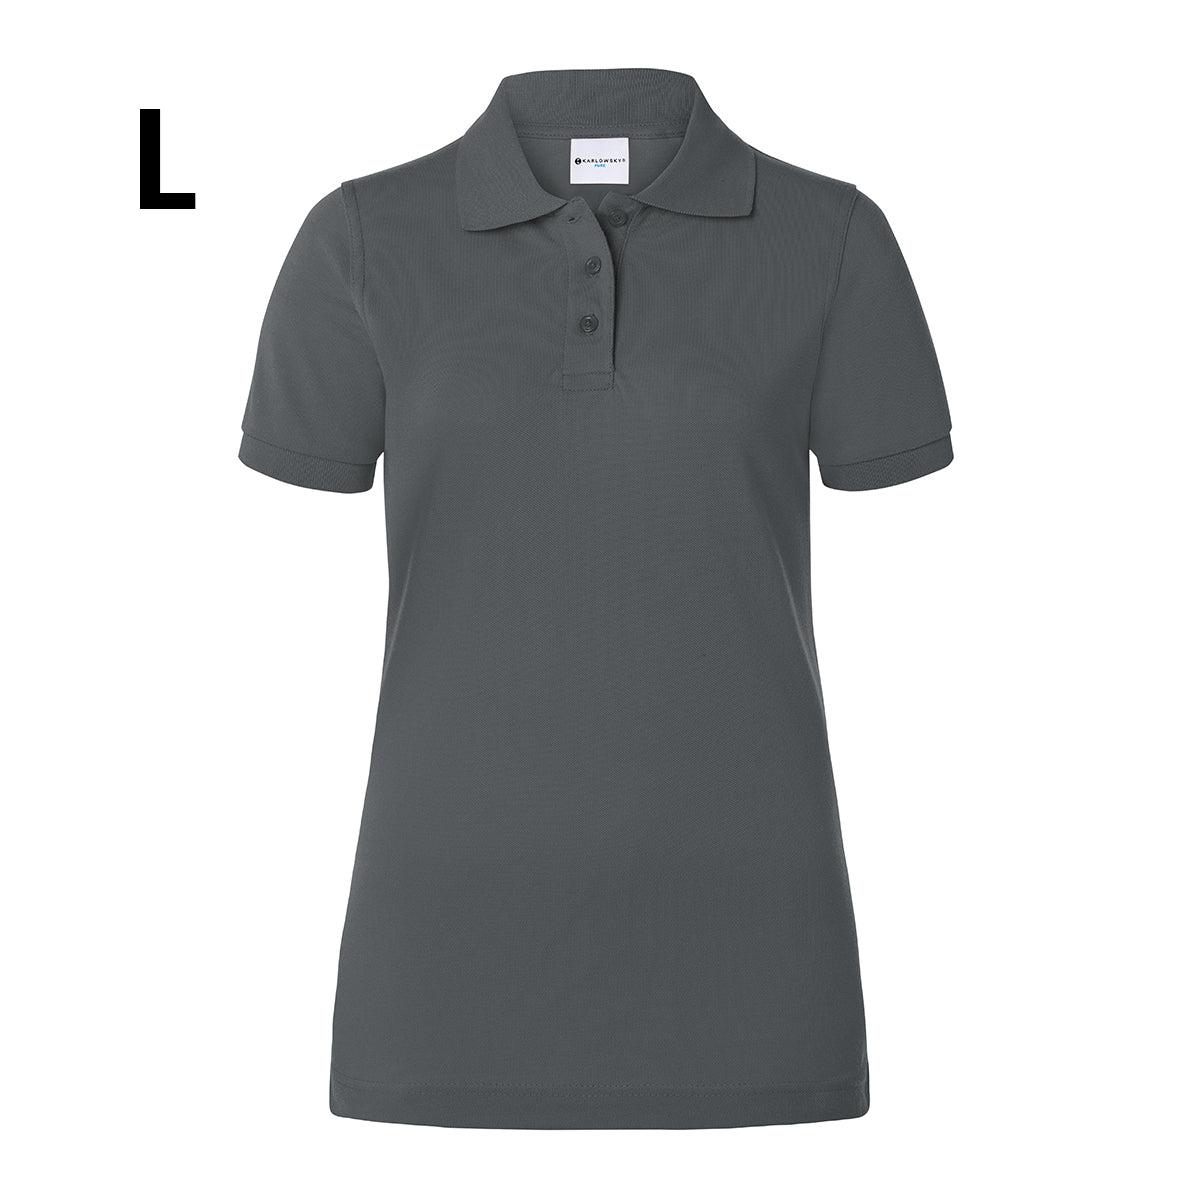 Karlowsky - Arbeidstøy Poloskjorte for kvinner Basic - Antrasitt - Størrelse: L